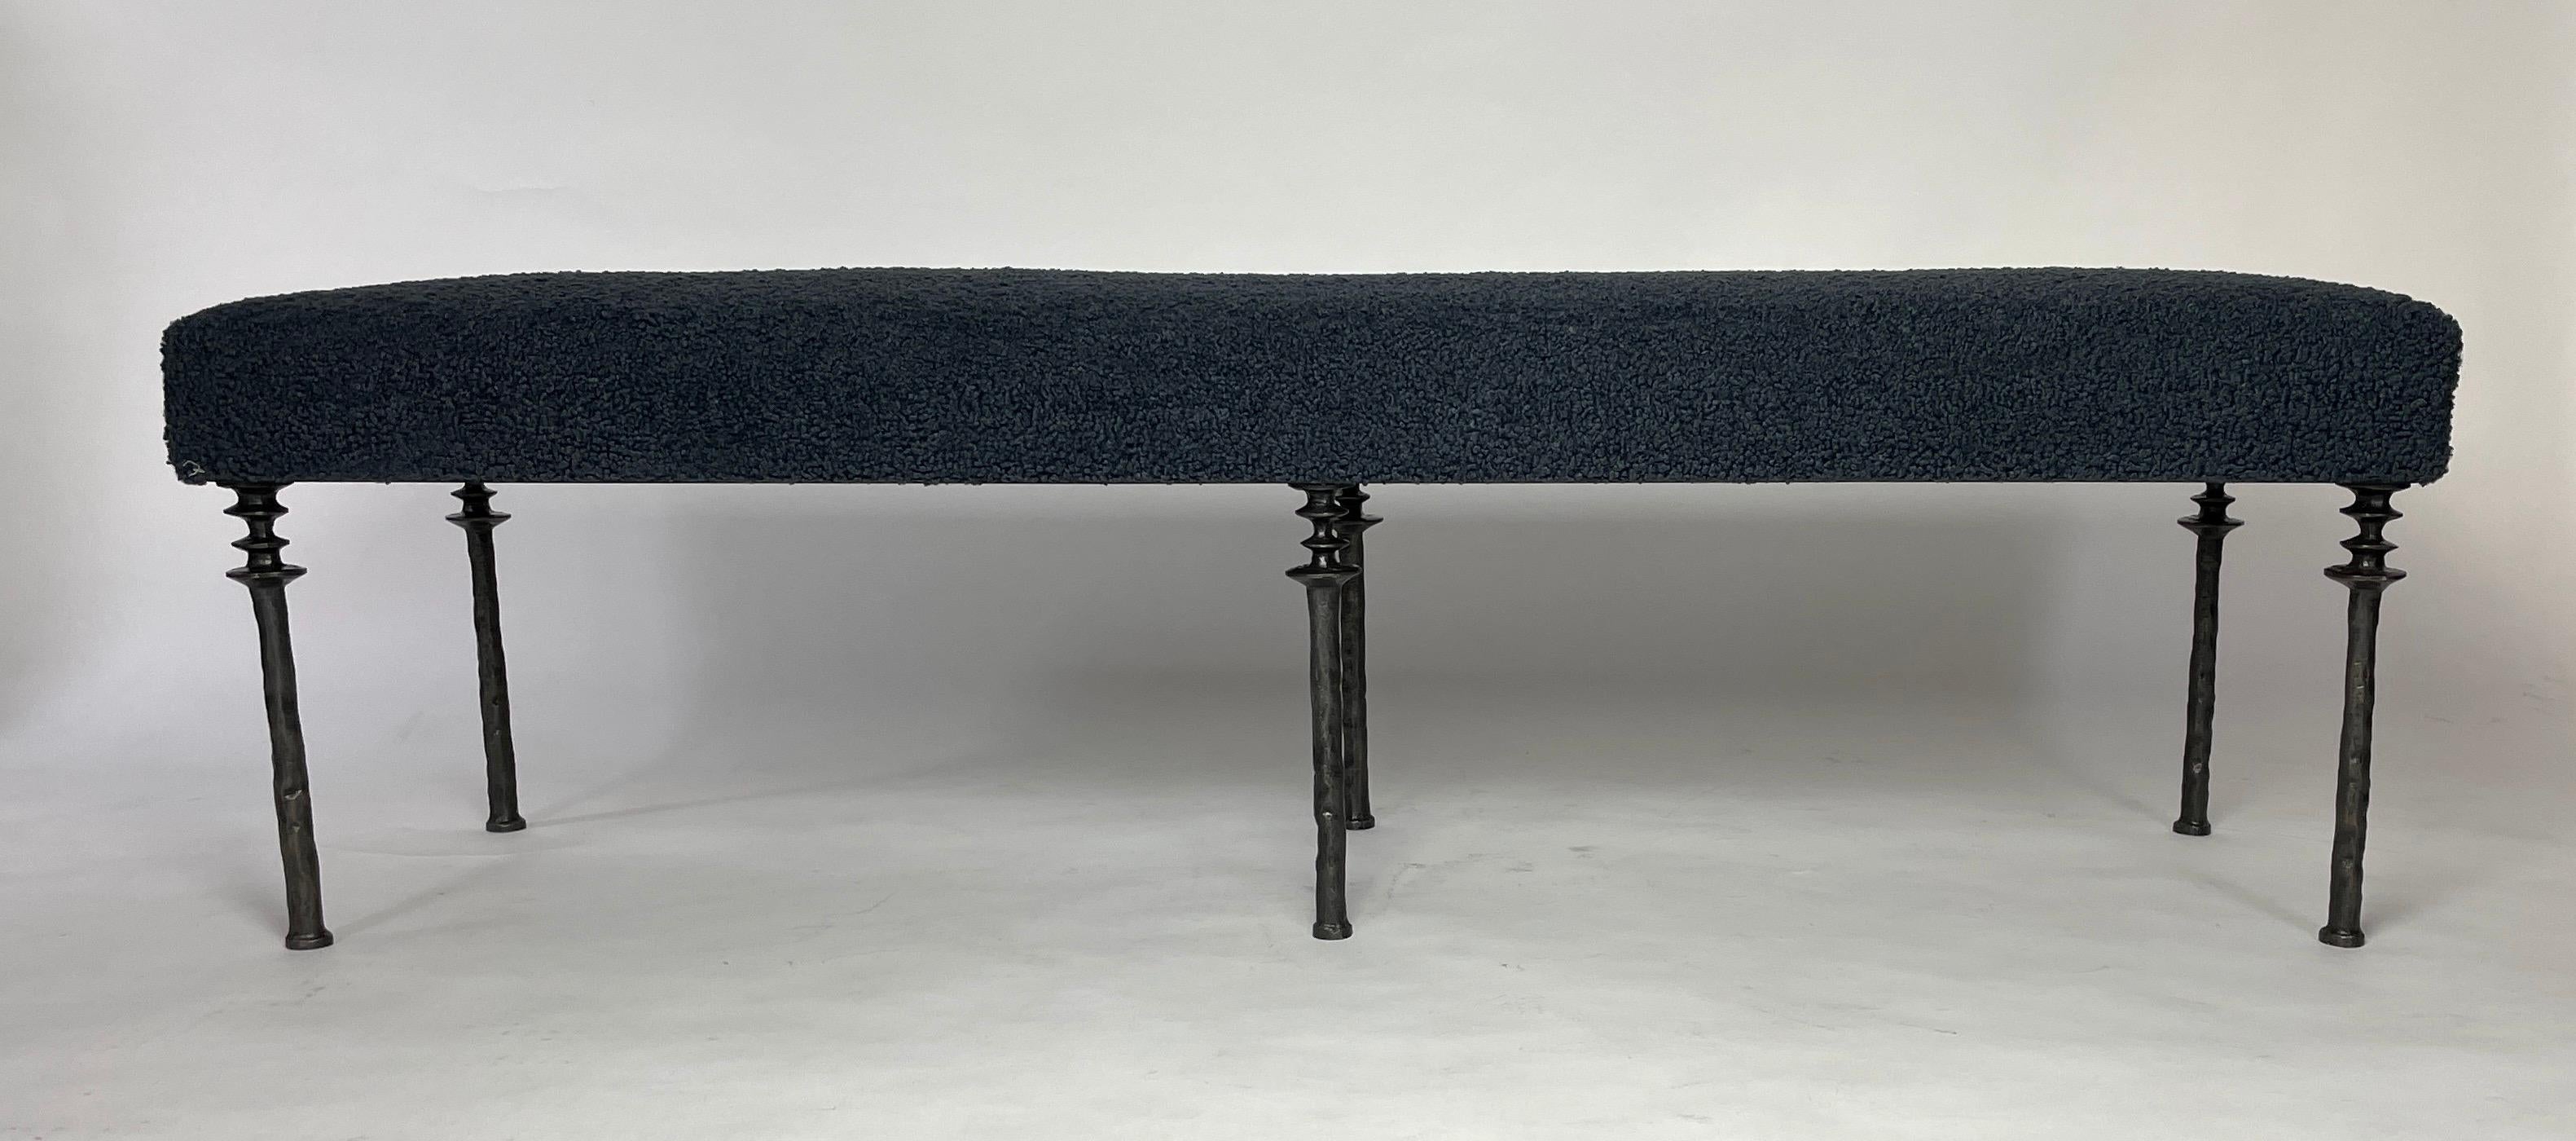 Diese von Diego Giacometti inspirierte Bank ist ideal für alle, die auf der Suche nach einem einzigartigen Sitzmöbel sind. Die aus Bronze gegossenen Beine verleihen ihm einen wahrhaft organischen Touch. Das Kissen ist mit einem dämmerungsblauen